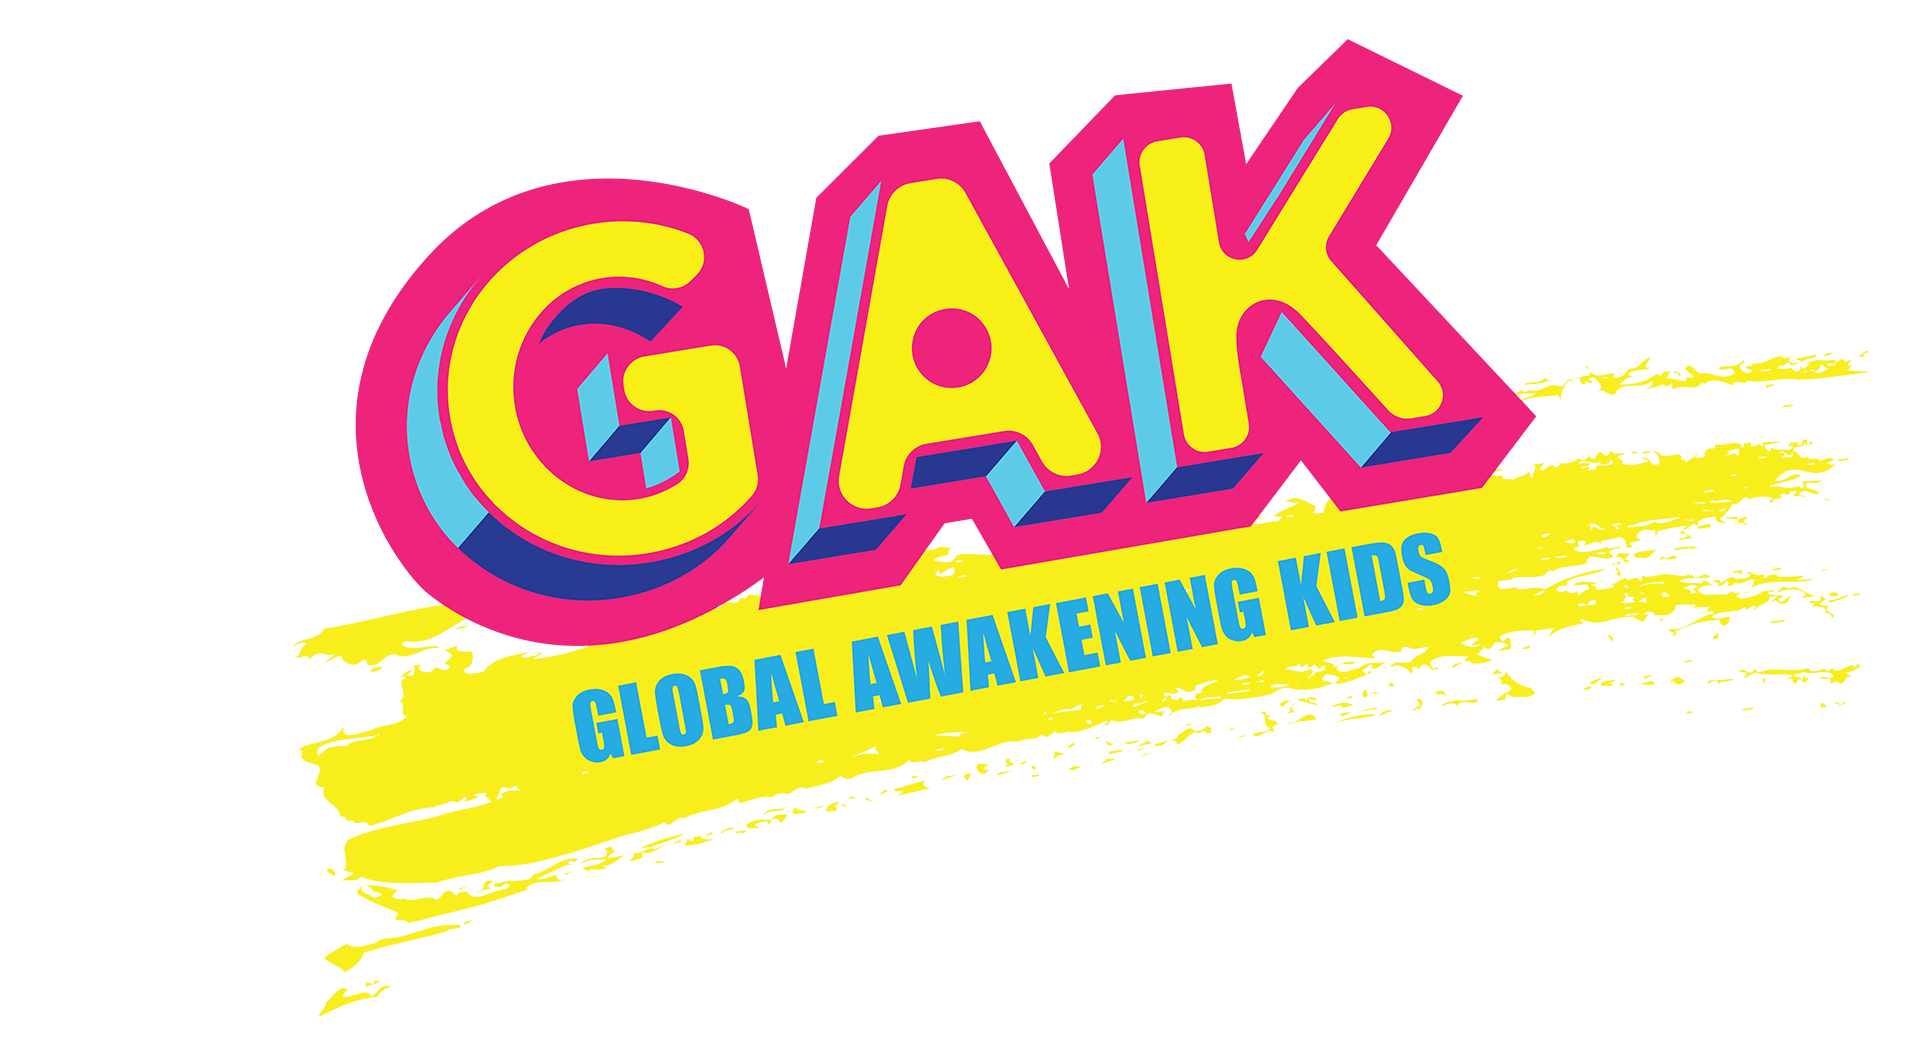 Global Awakening Kids